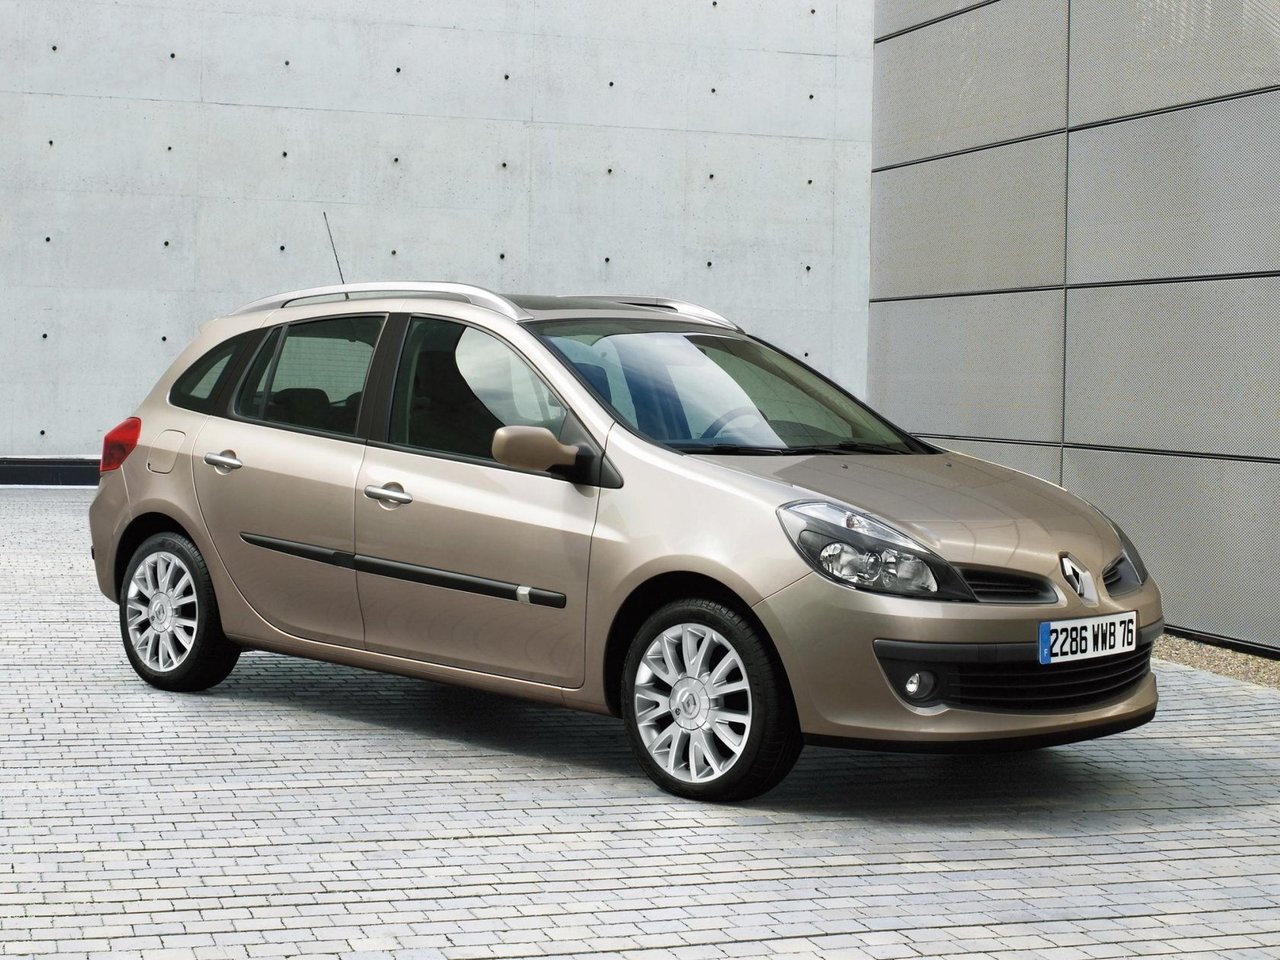 Расход газа двух комплектаций универсала пять дверей Renault Clio. Разница стоимости заправки газом и бензином. Автономный пробег до и после установки ГБО.